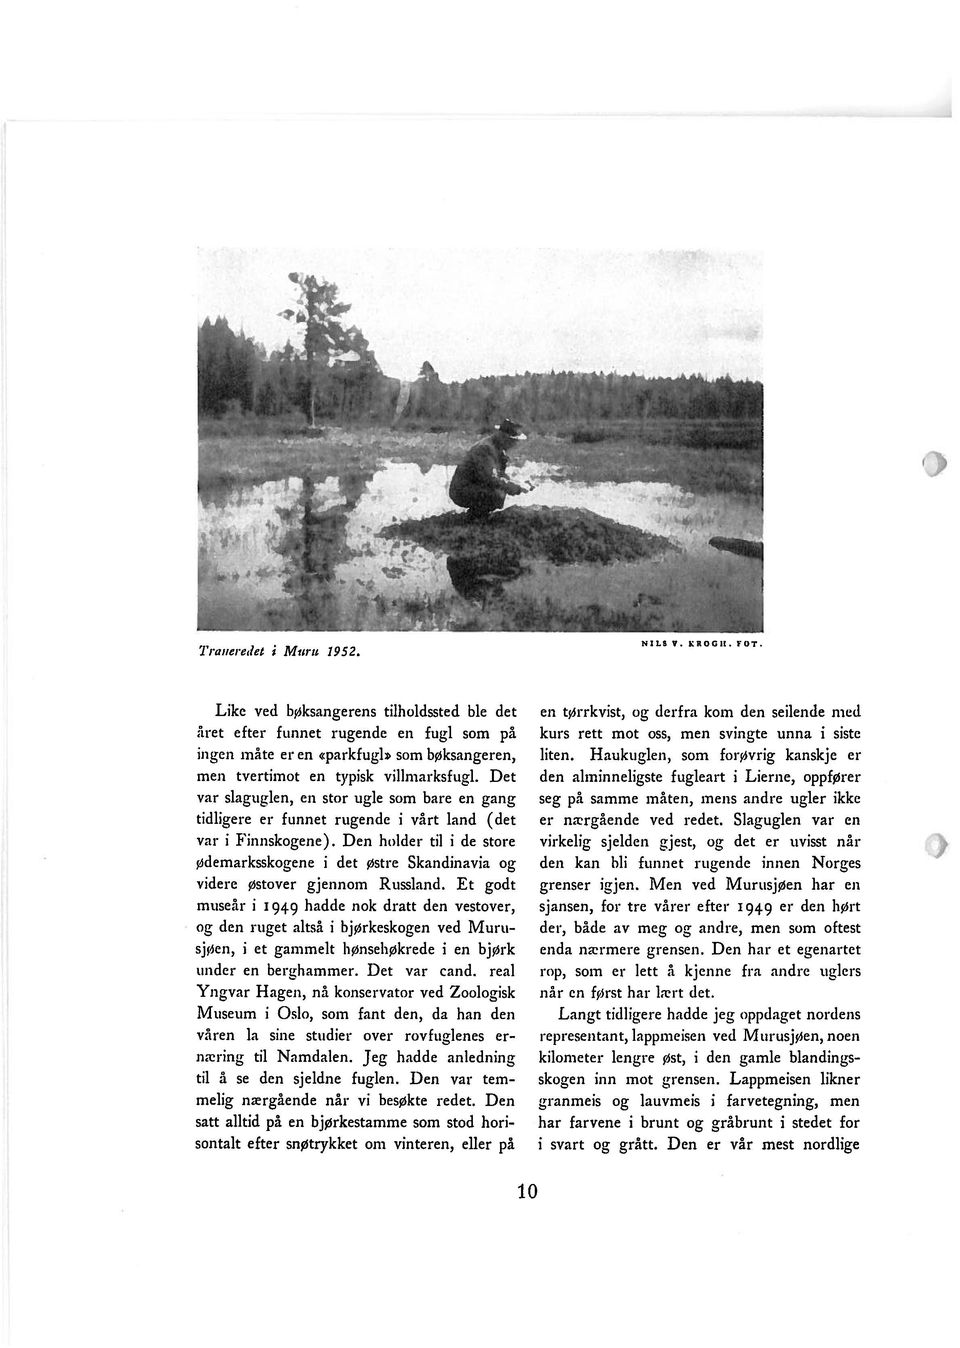 Det var slaguglen, en stor ugle som bare en gang tidligere er funnet rugende i vårt land (det var i Finnskogene).